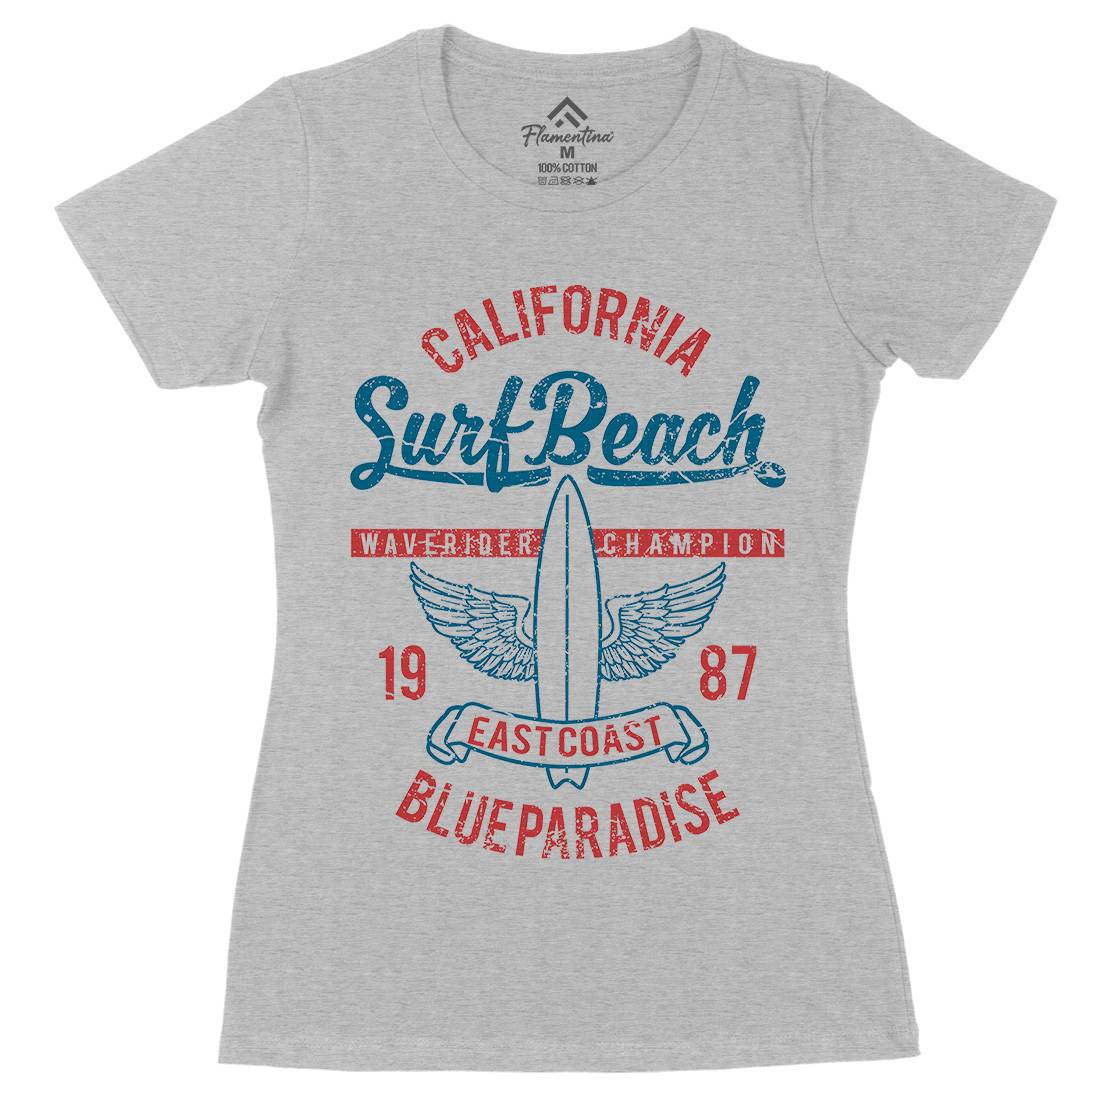 Beach Womens Organic Crew Neck T-Shirt Surf A168